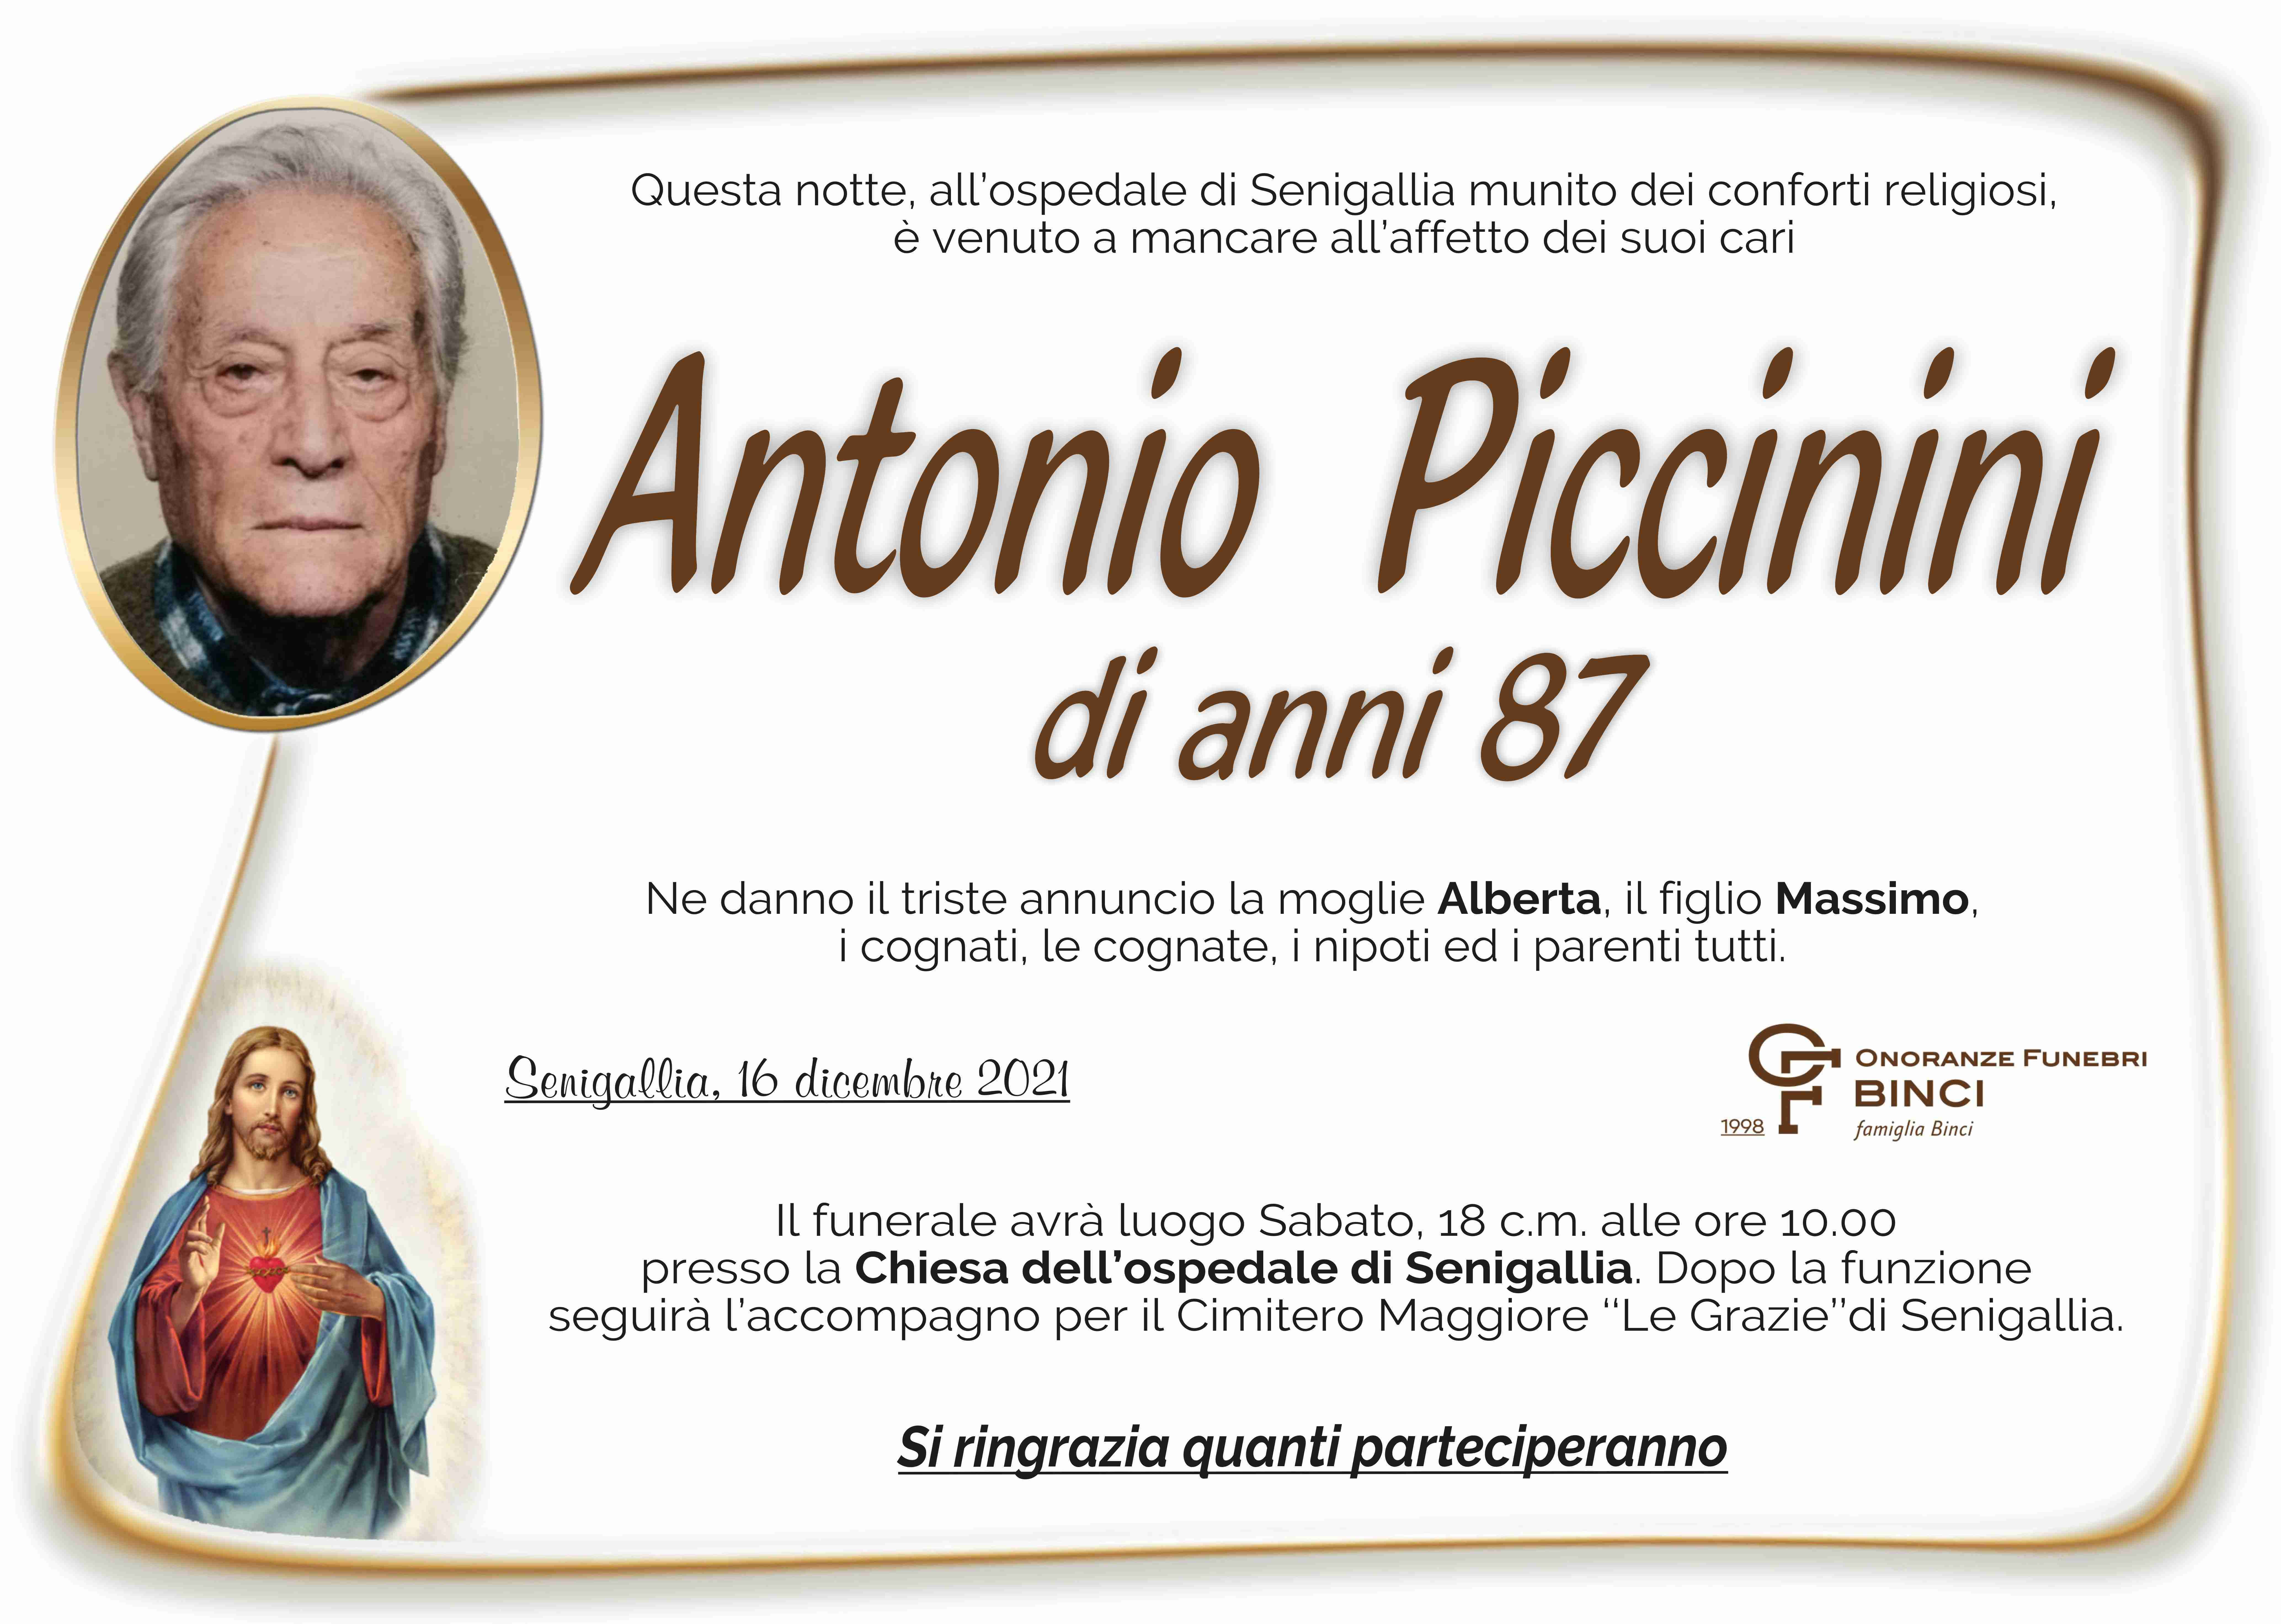 Antonio Piccinini